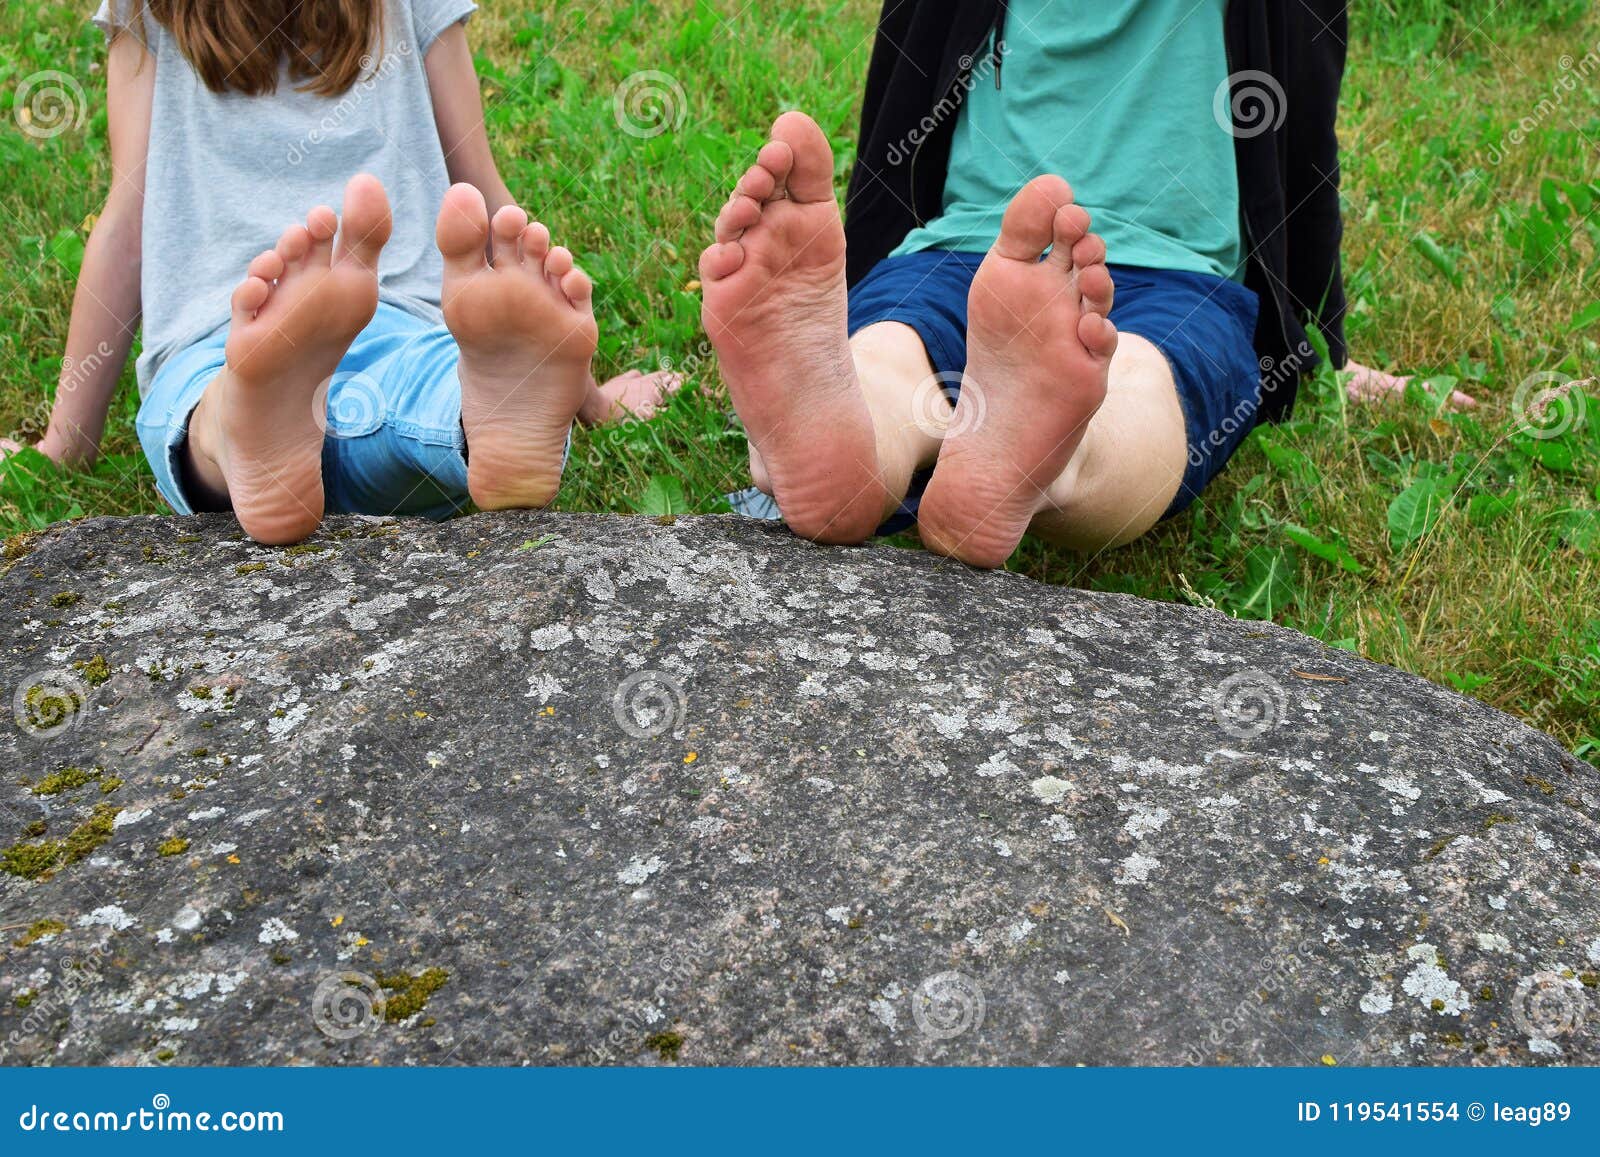 Голые Ноги Девушки Фото Скачать